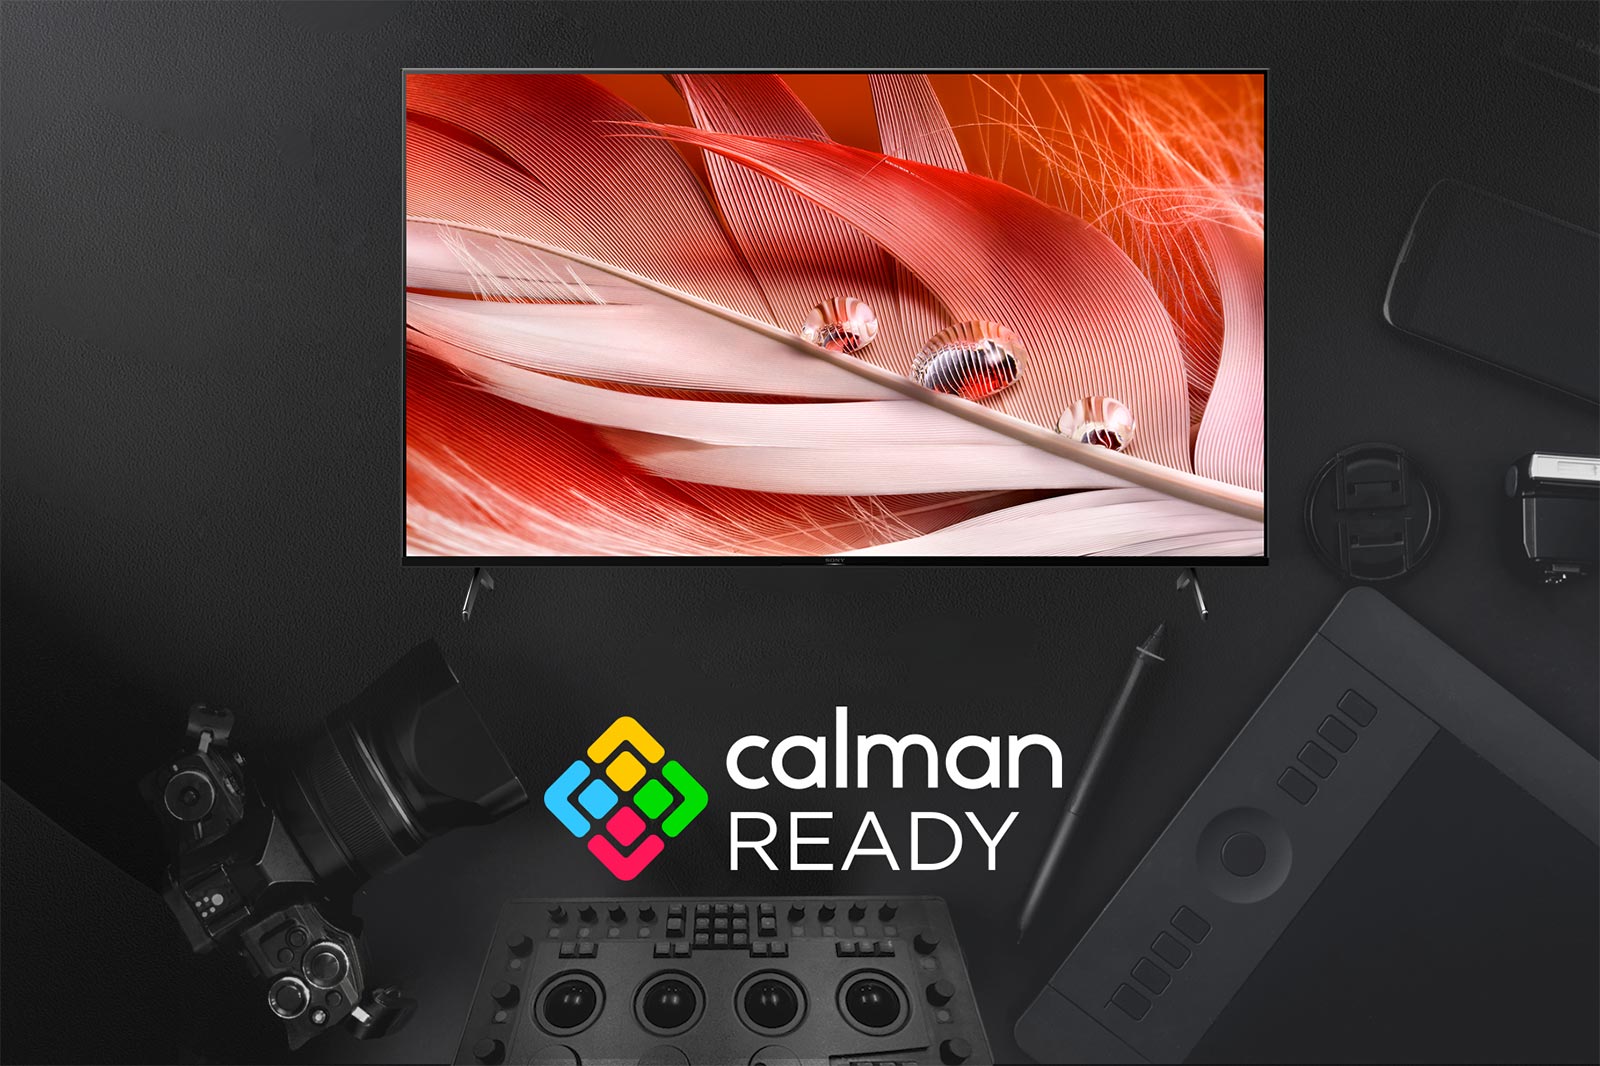 پشتیبانی از برنامه Calman Ready در تلویزیون 55X9000J